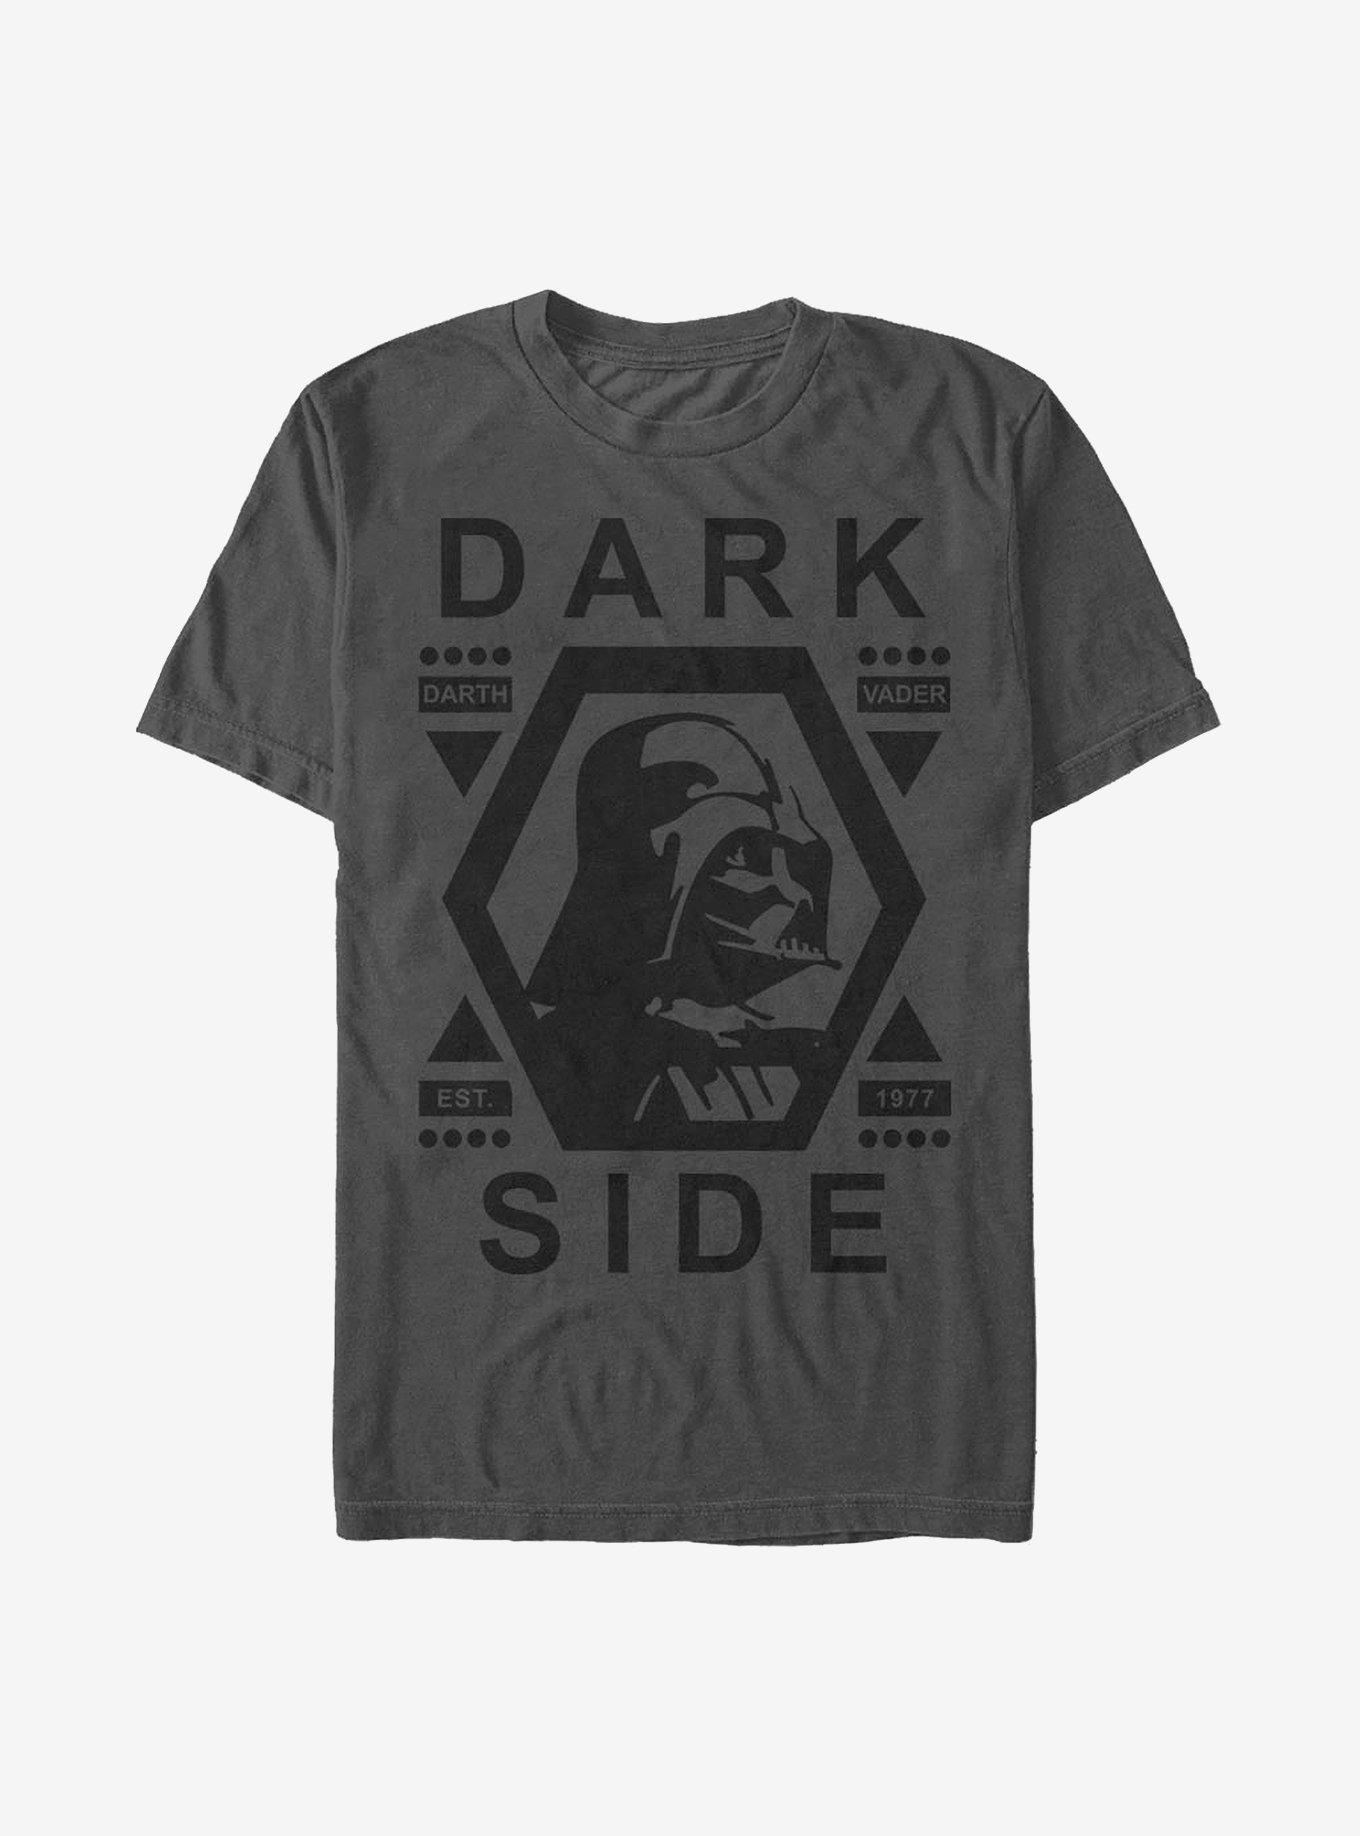 Star Wars Dark Side Vader T-Shirt, CHARCOAL, hi-res